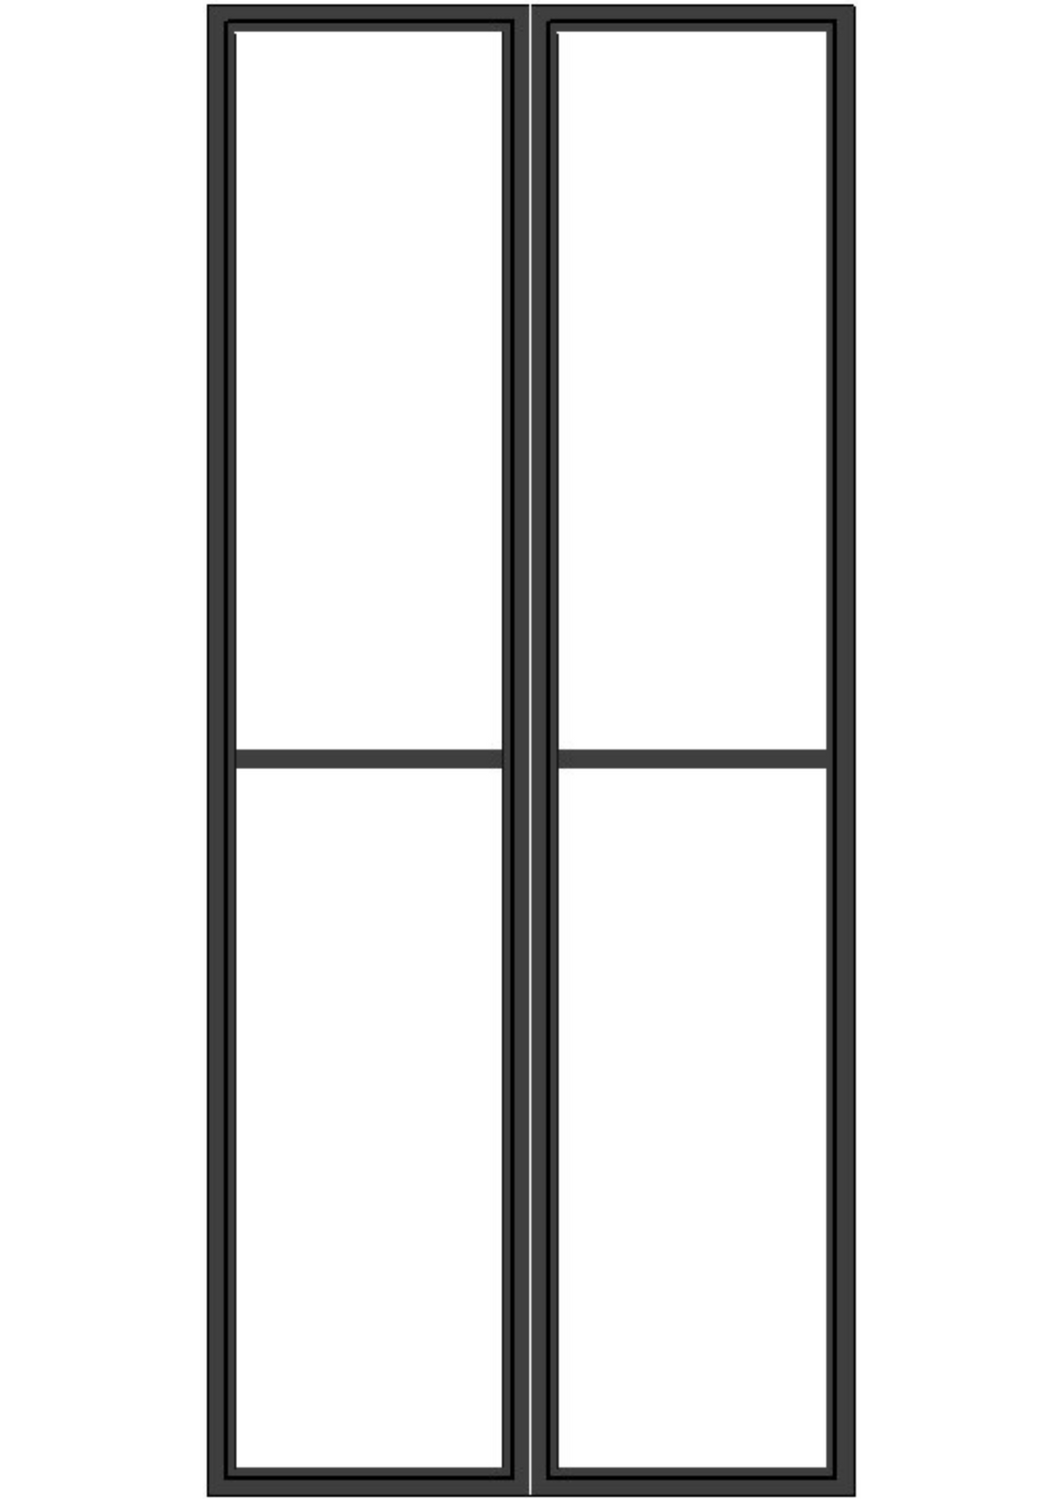 Framed Glass Door Series - GD5